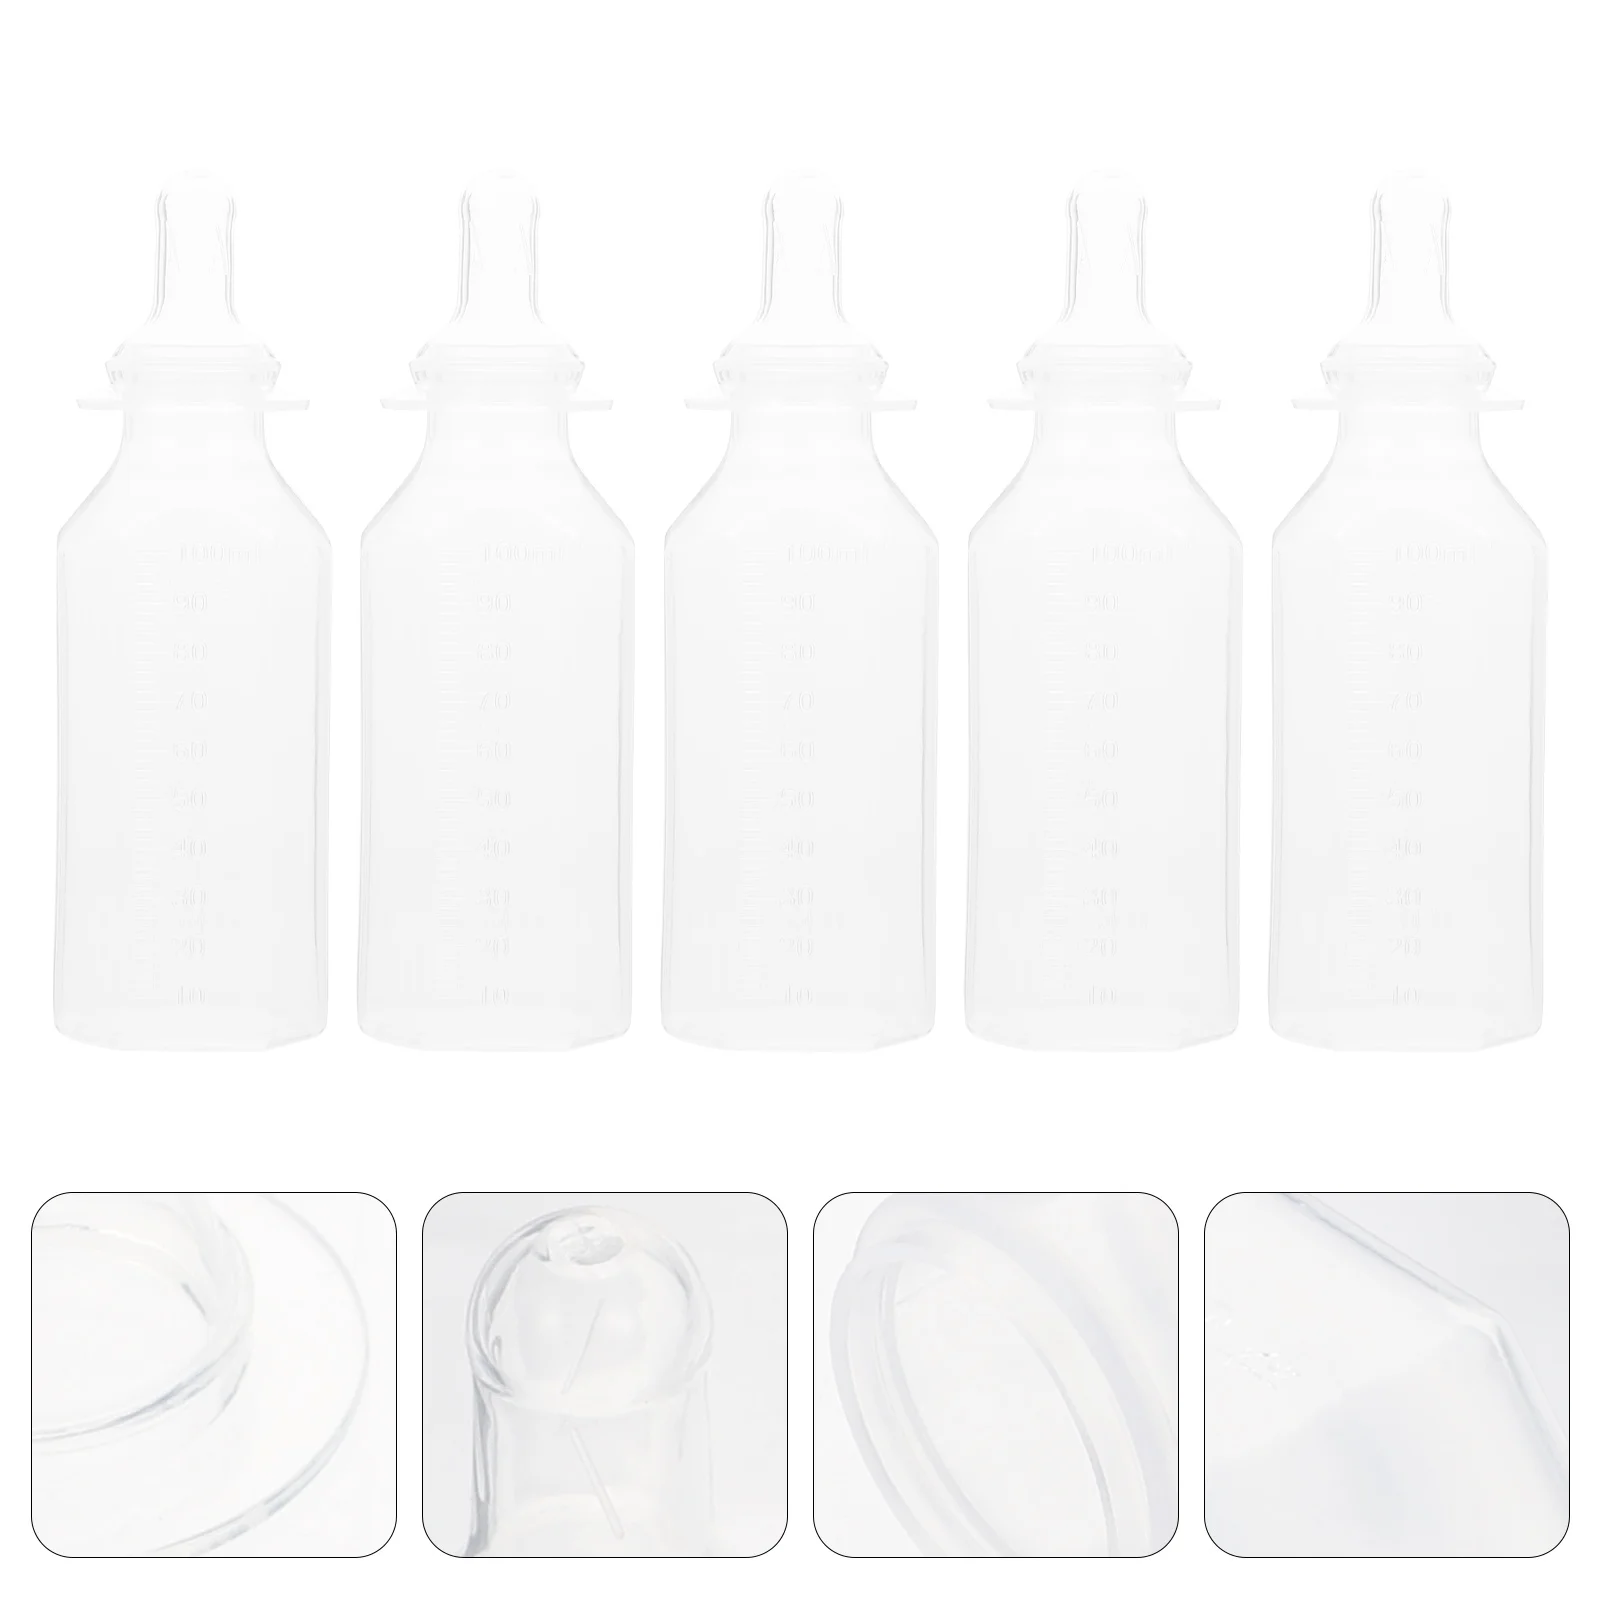 

5 шт. одноразовых бутылочек для кормления, бутылочки для молока, одноразовые кормушки для младенцев из пищевого материала для новорожденных на открытом воздухе, кормушки для сухого соска